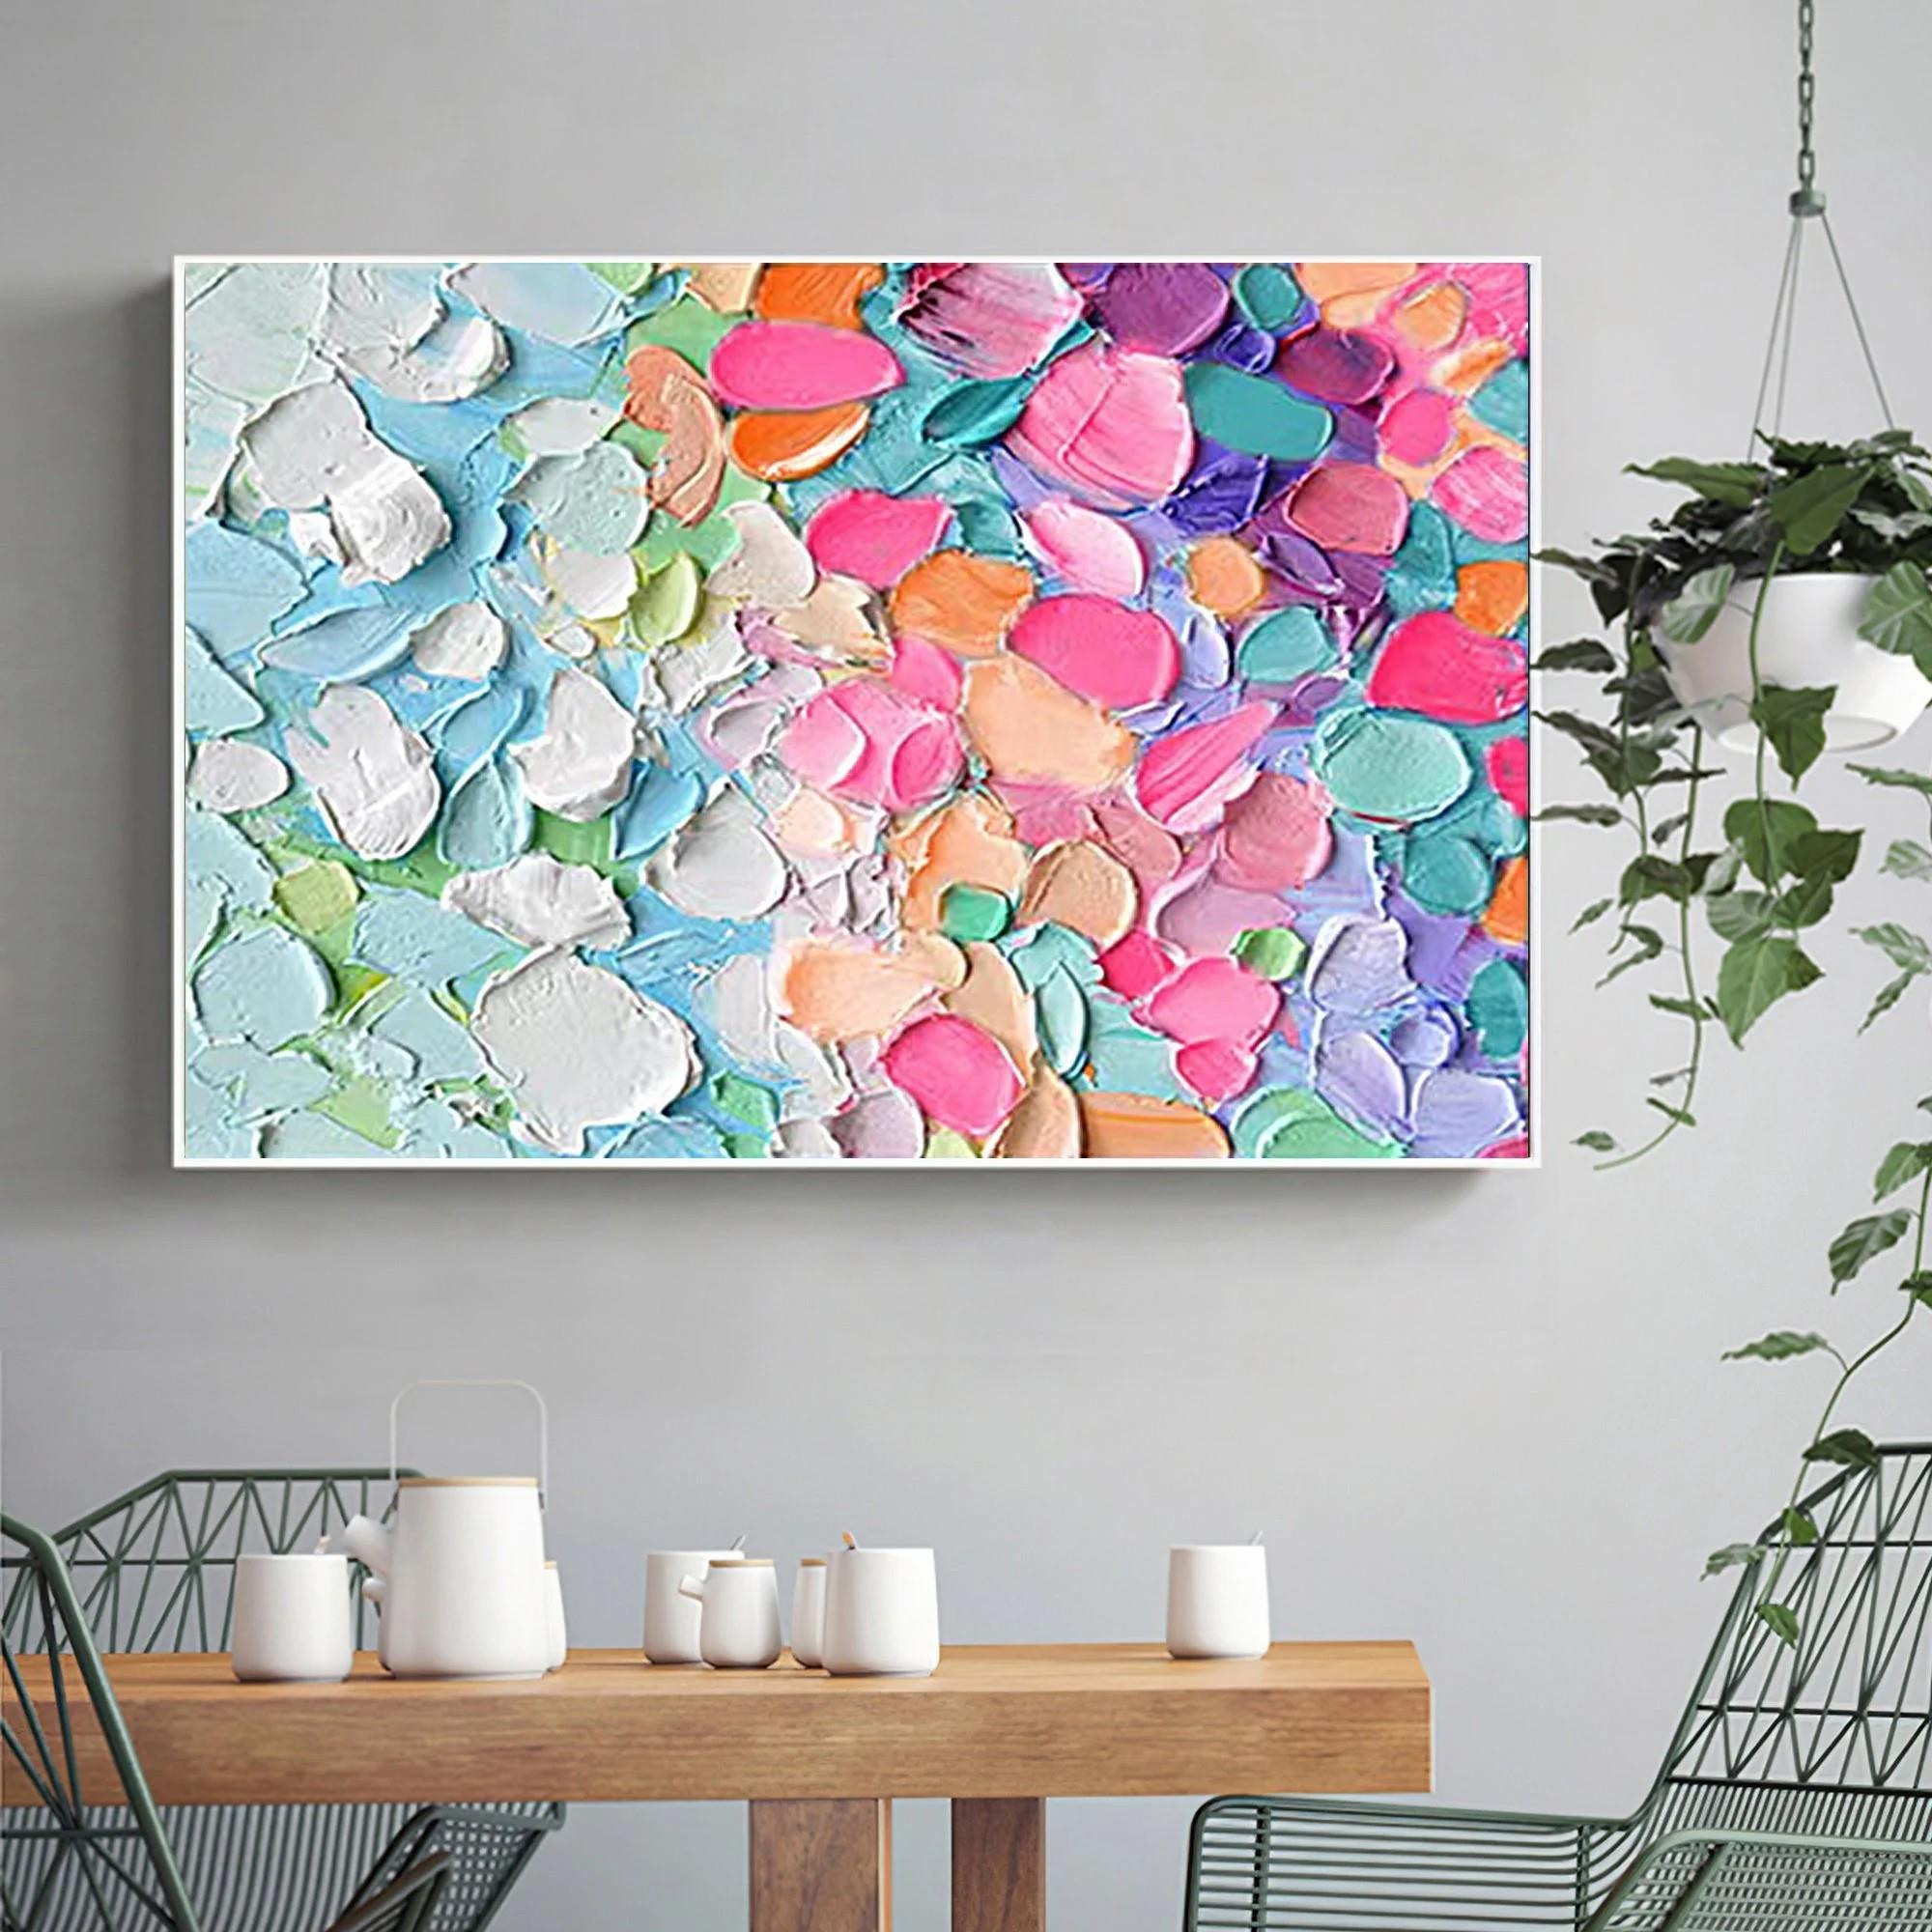 パレットナイフによるネオンのカラフルな花びらの抽象画ウォールアートミニマリズム油絵